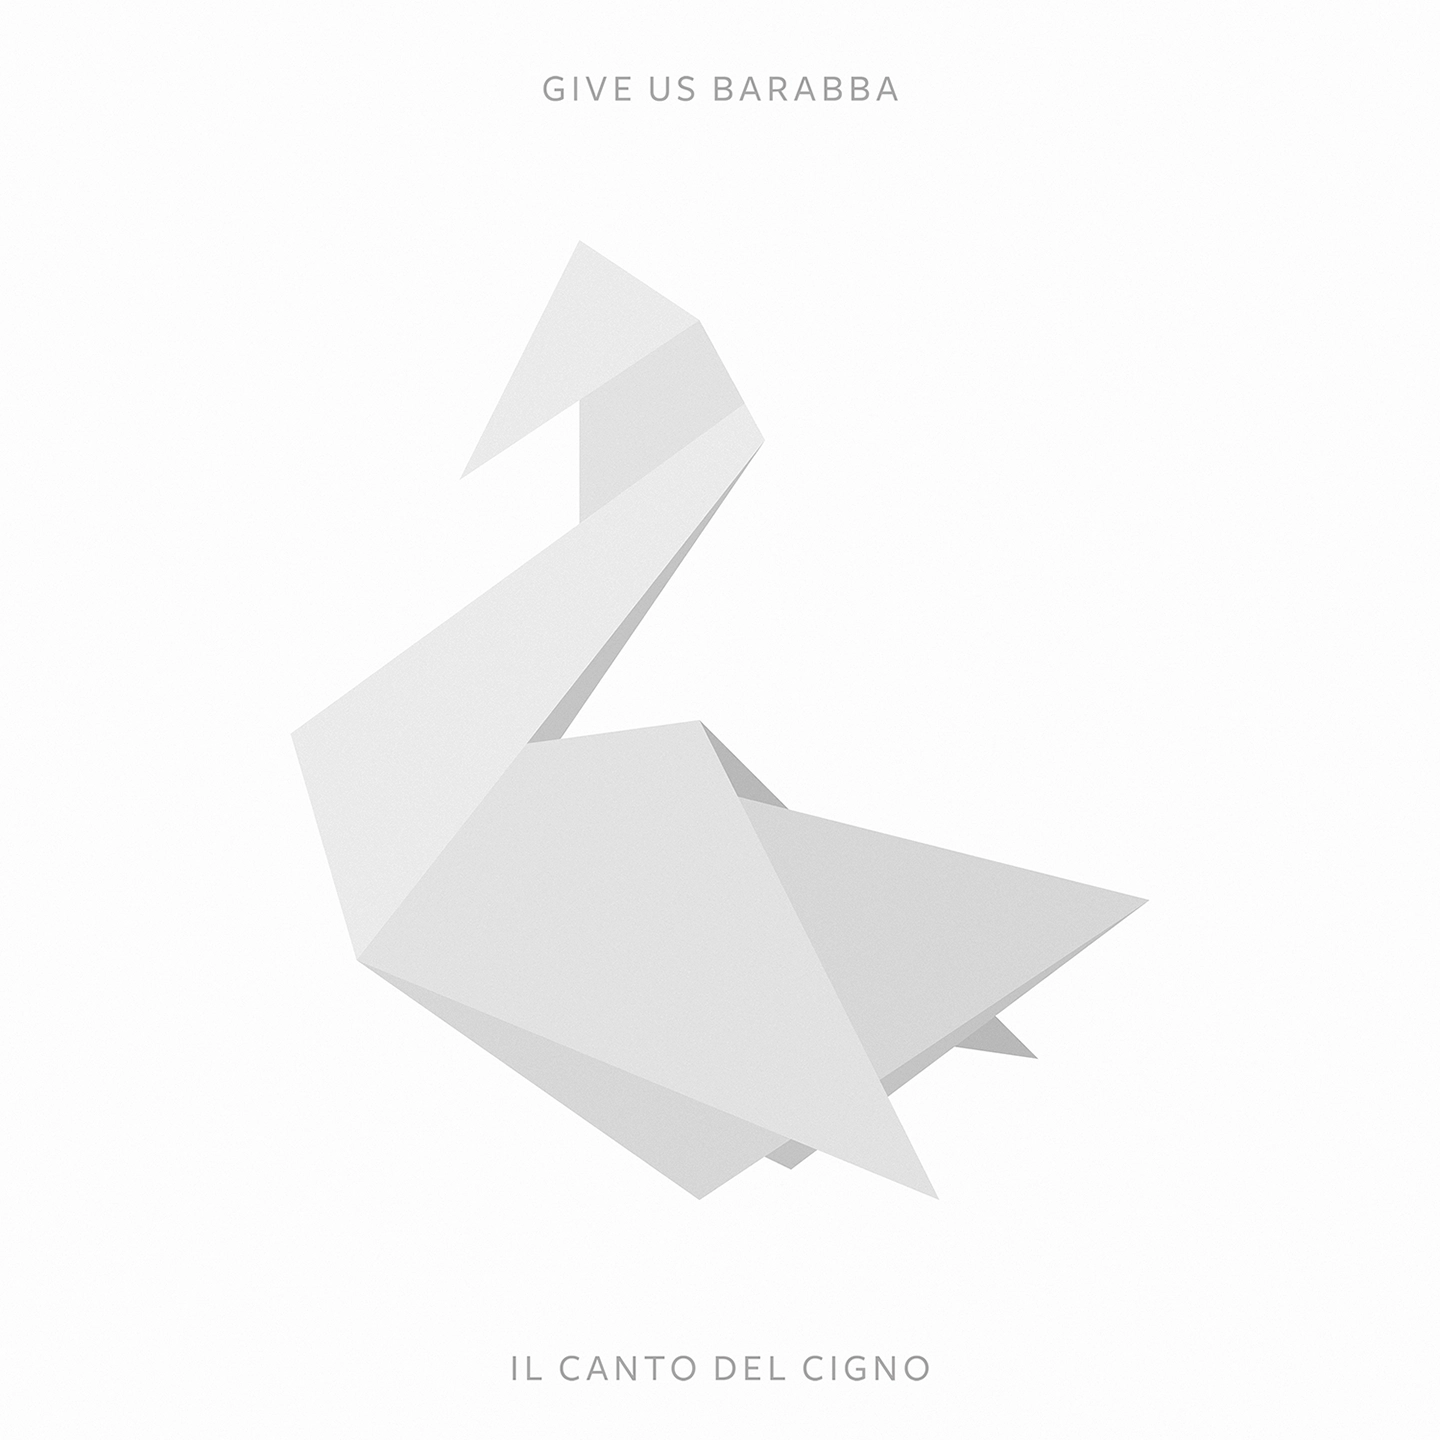 Osvaldo Indriolo • Artwork Il Canto del Cigno • Give Us Barabba